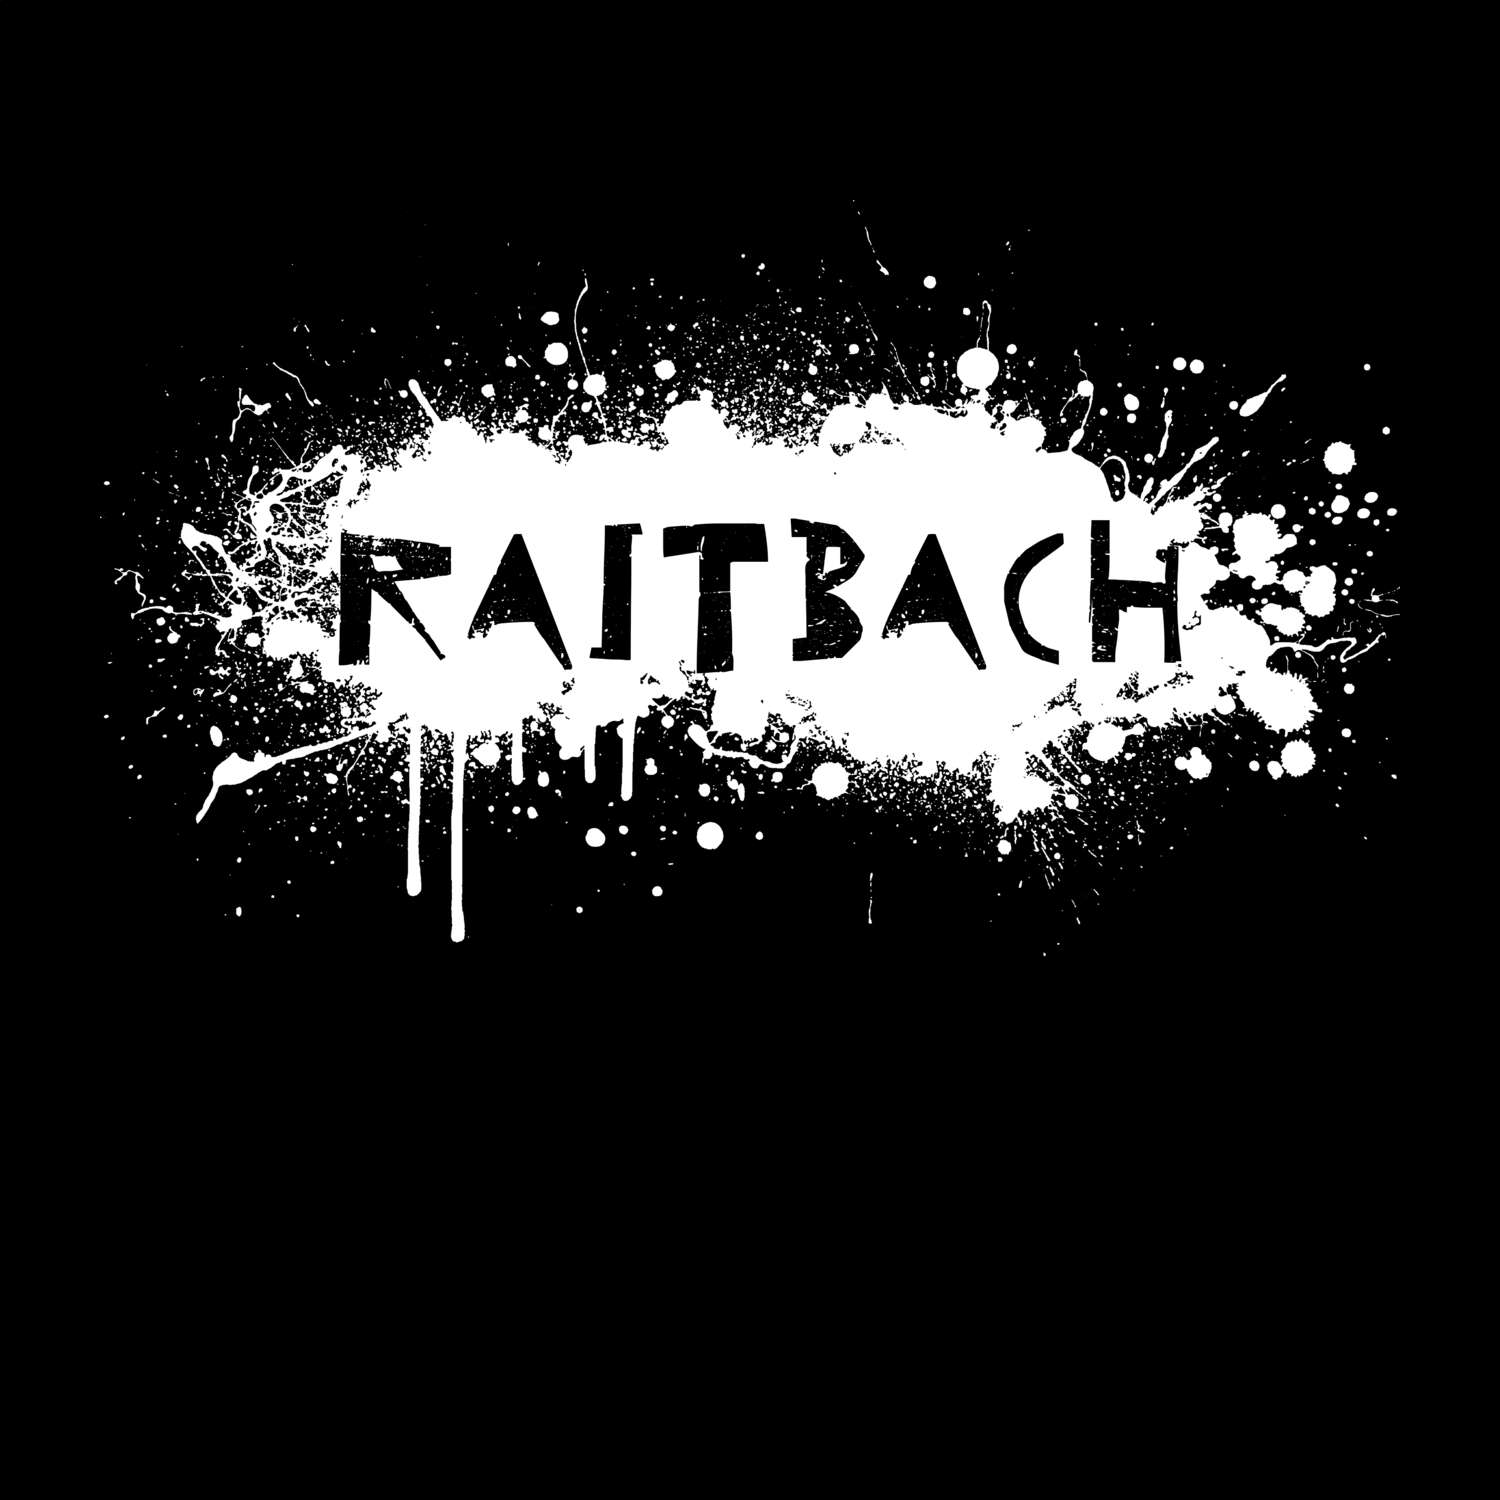 Raitbach T-Shirt »Paint Splash Punk«